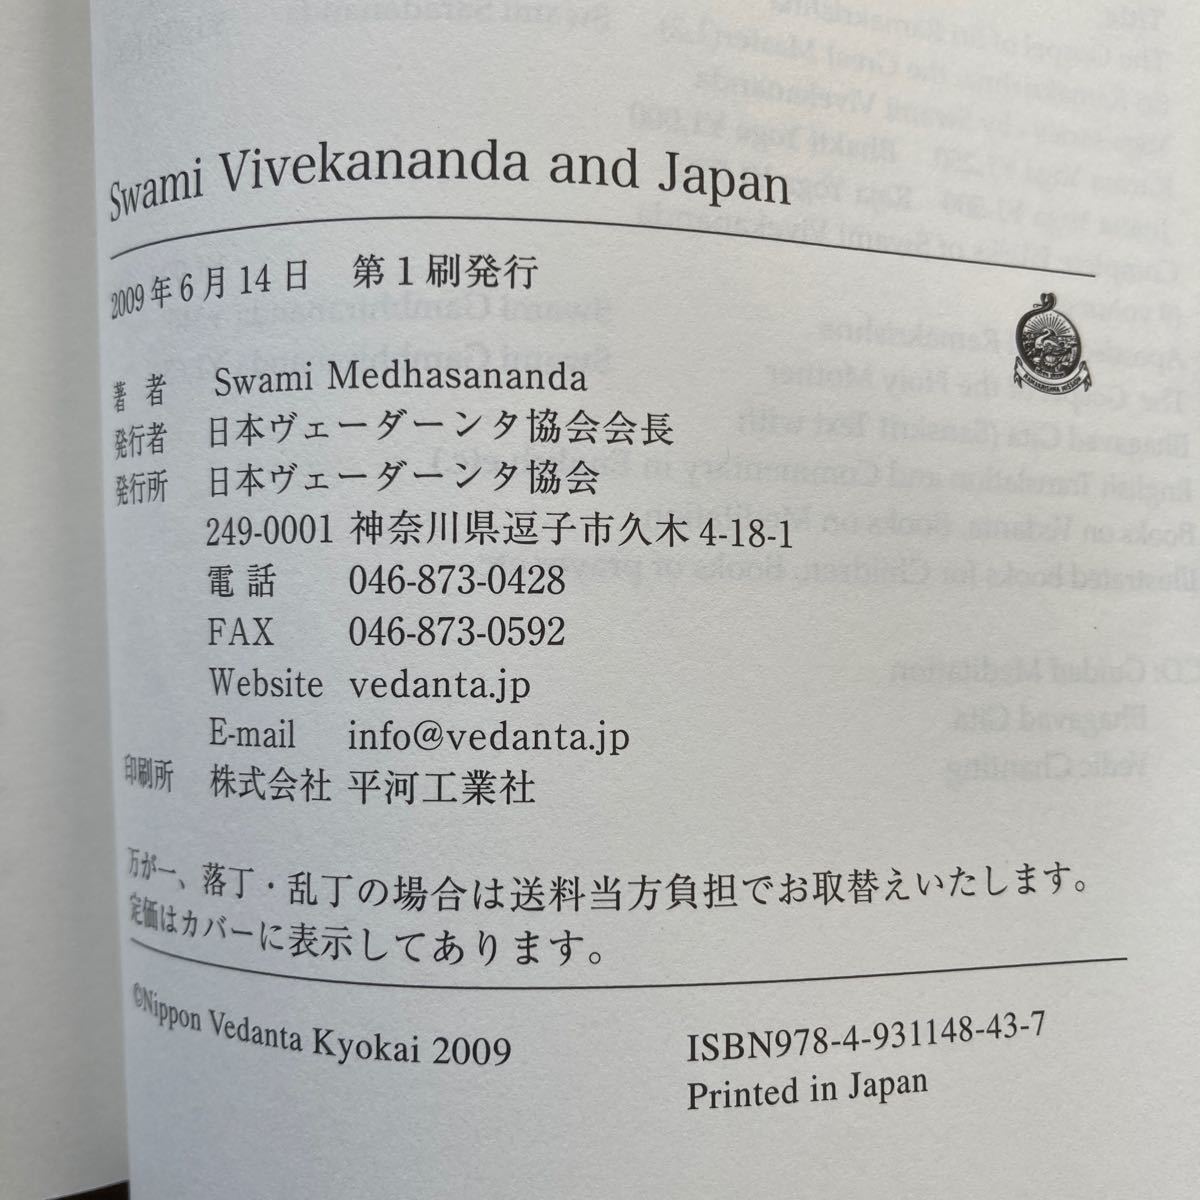 s Whammy * vi ve- Carna nda[Swami Vivekananda and Japan|Swami Medhasananda] Япония ve-da-nta ассоциация *2009 год no. 1.( английская версия )